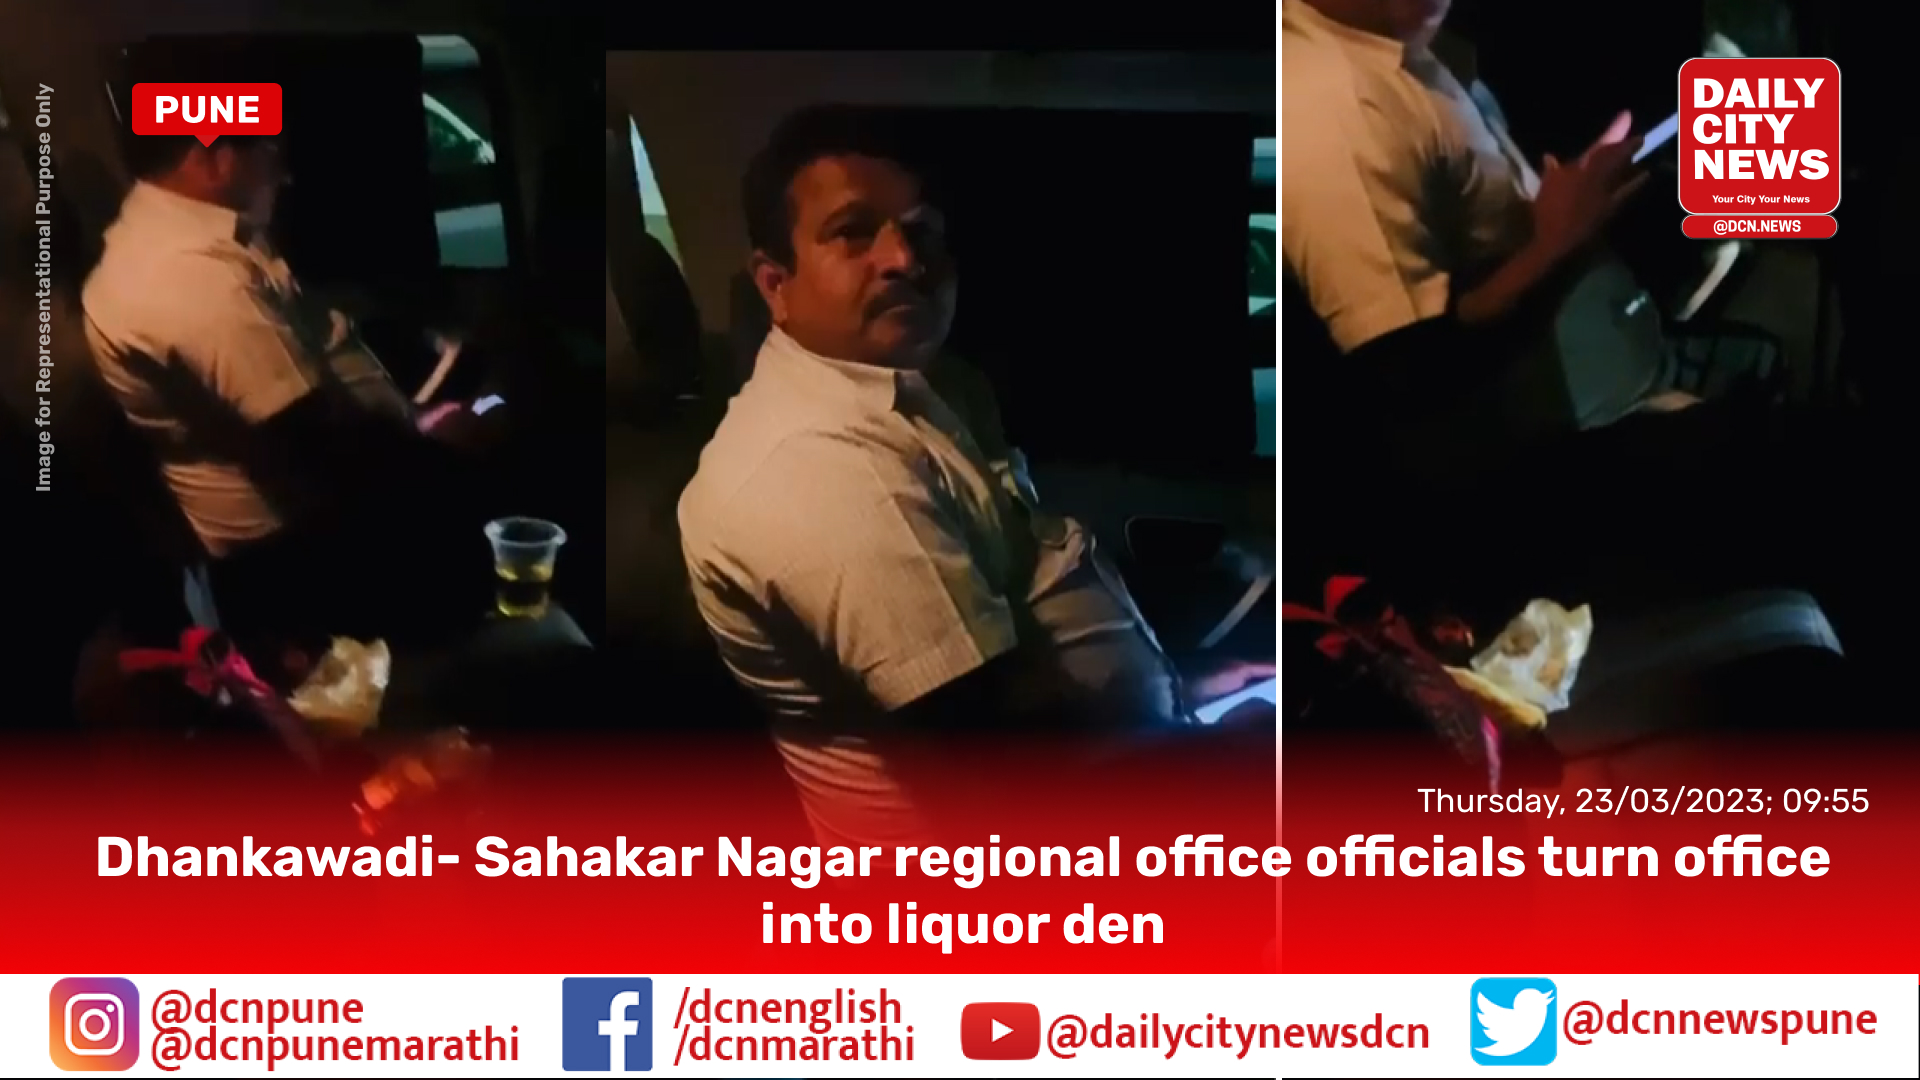 Dhankawadi- Sahakar Nagar regional office officials turn office into liquor den